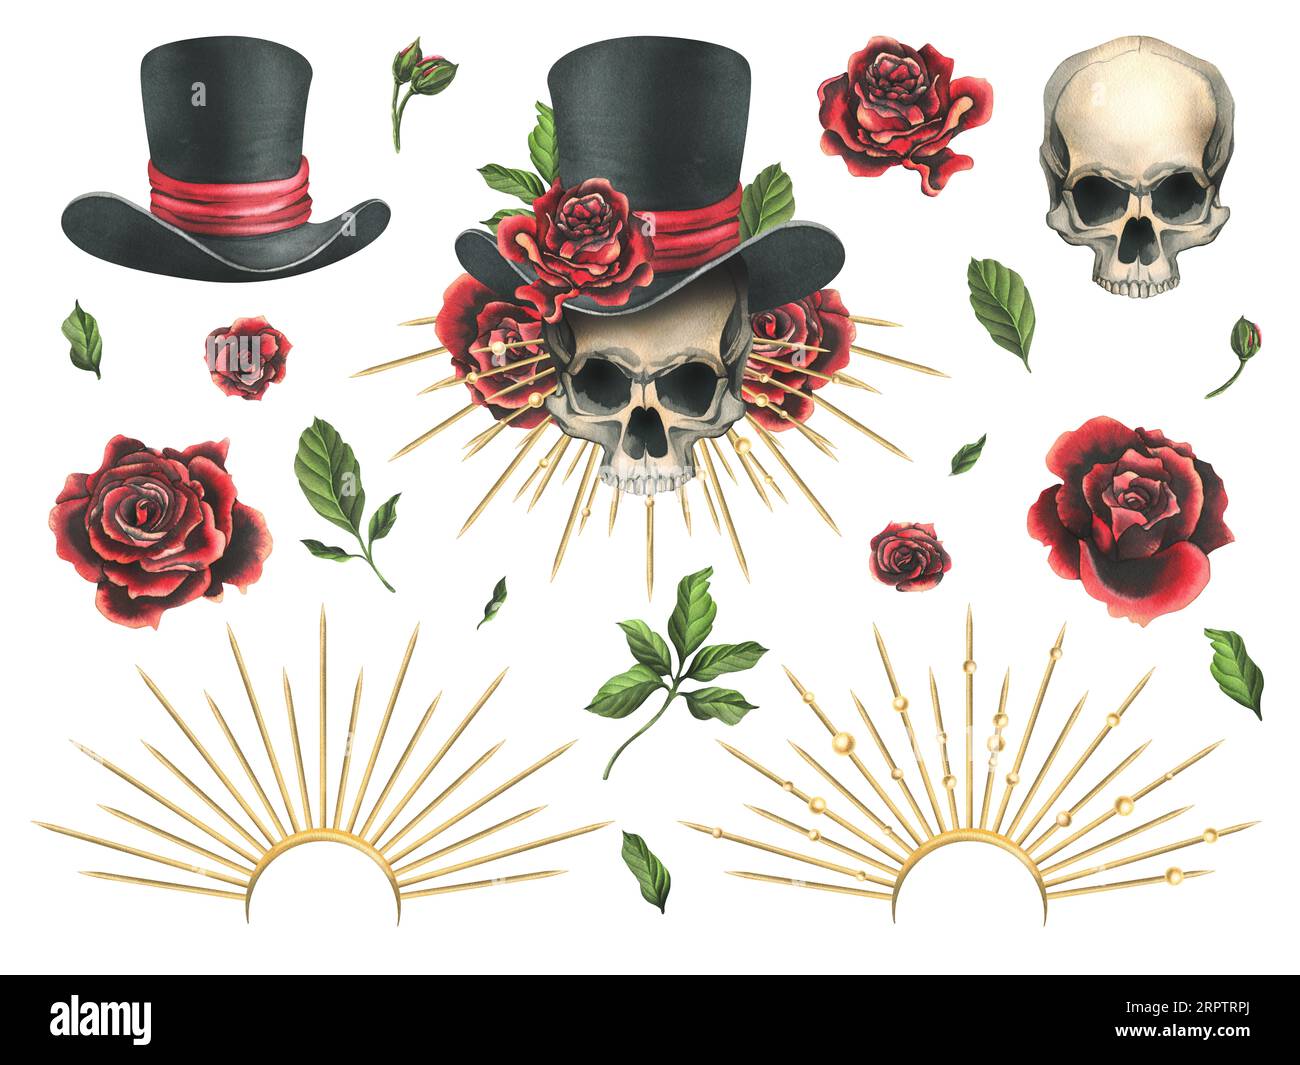 Crâne humain dans un chapeau haut de gamme avec des roses rouges, une couronne dorée avec des rayons. Illustration aquarelle dessinée à la main pour le jour des morts, halloween, Dia de los Banque D'Images